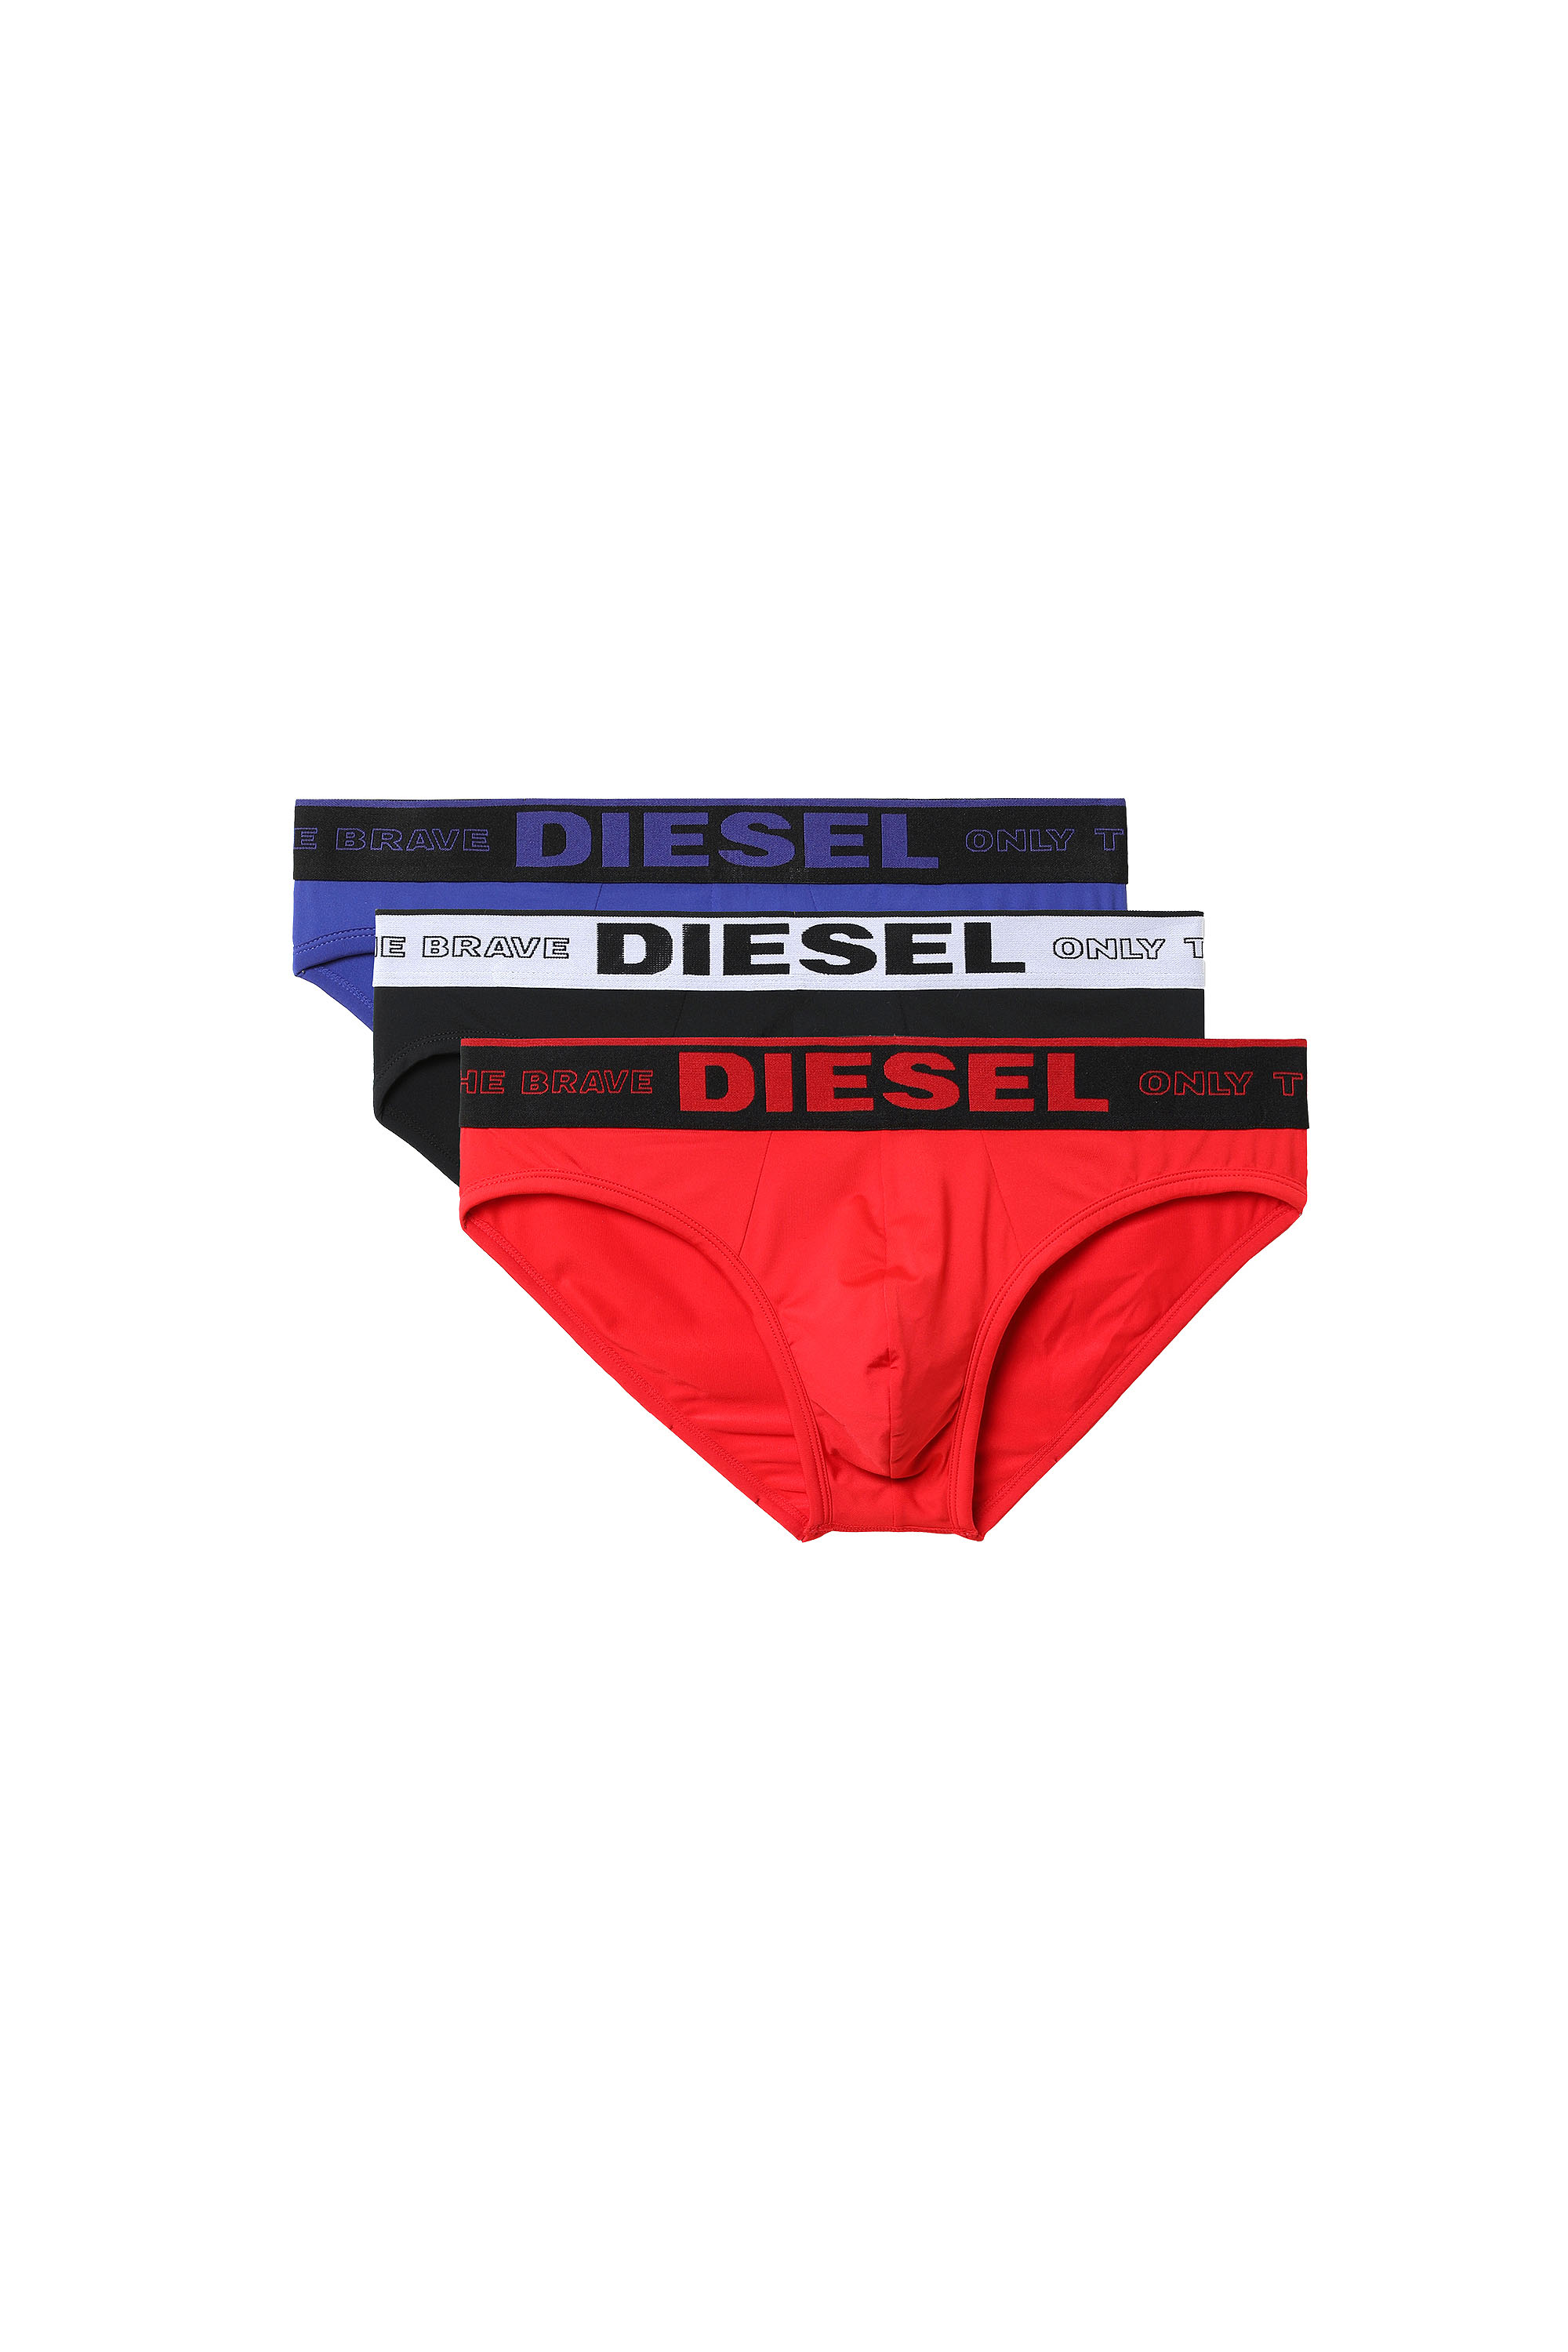 Diesel - 55-DBRIEF-THREEPACK, Black/Red - Image 3